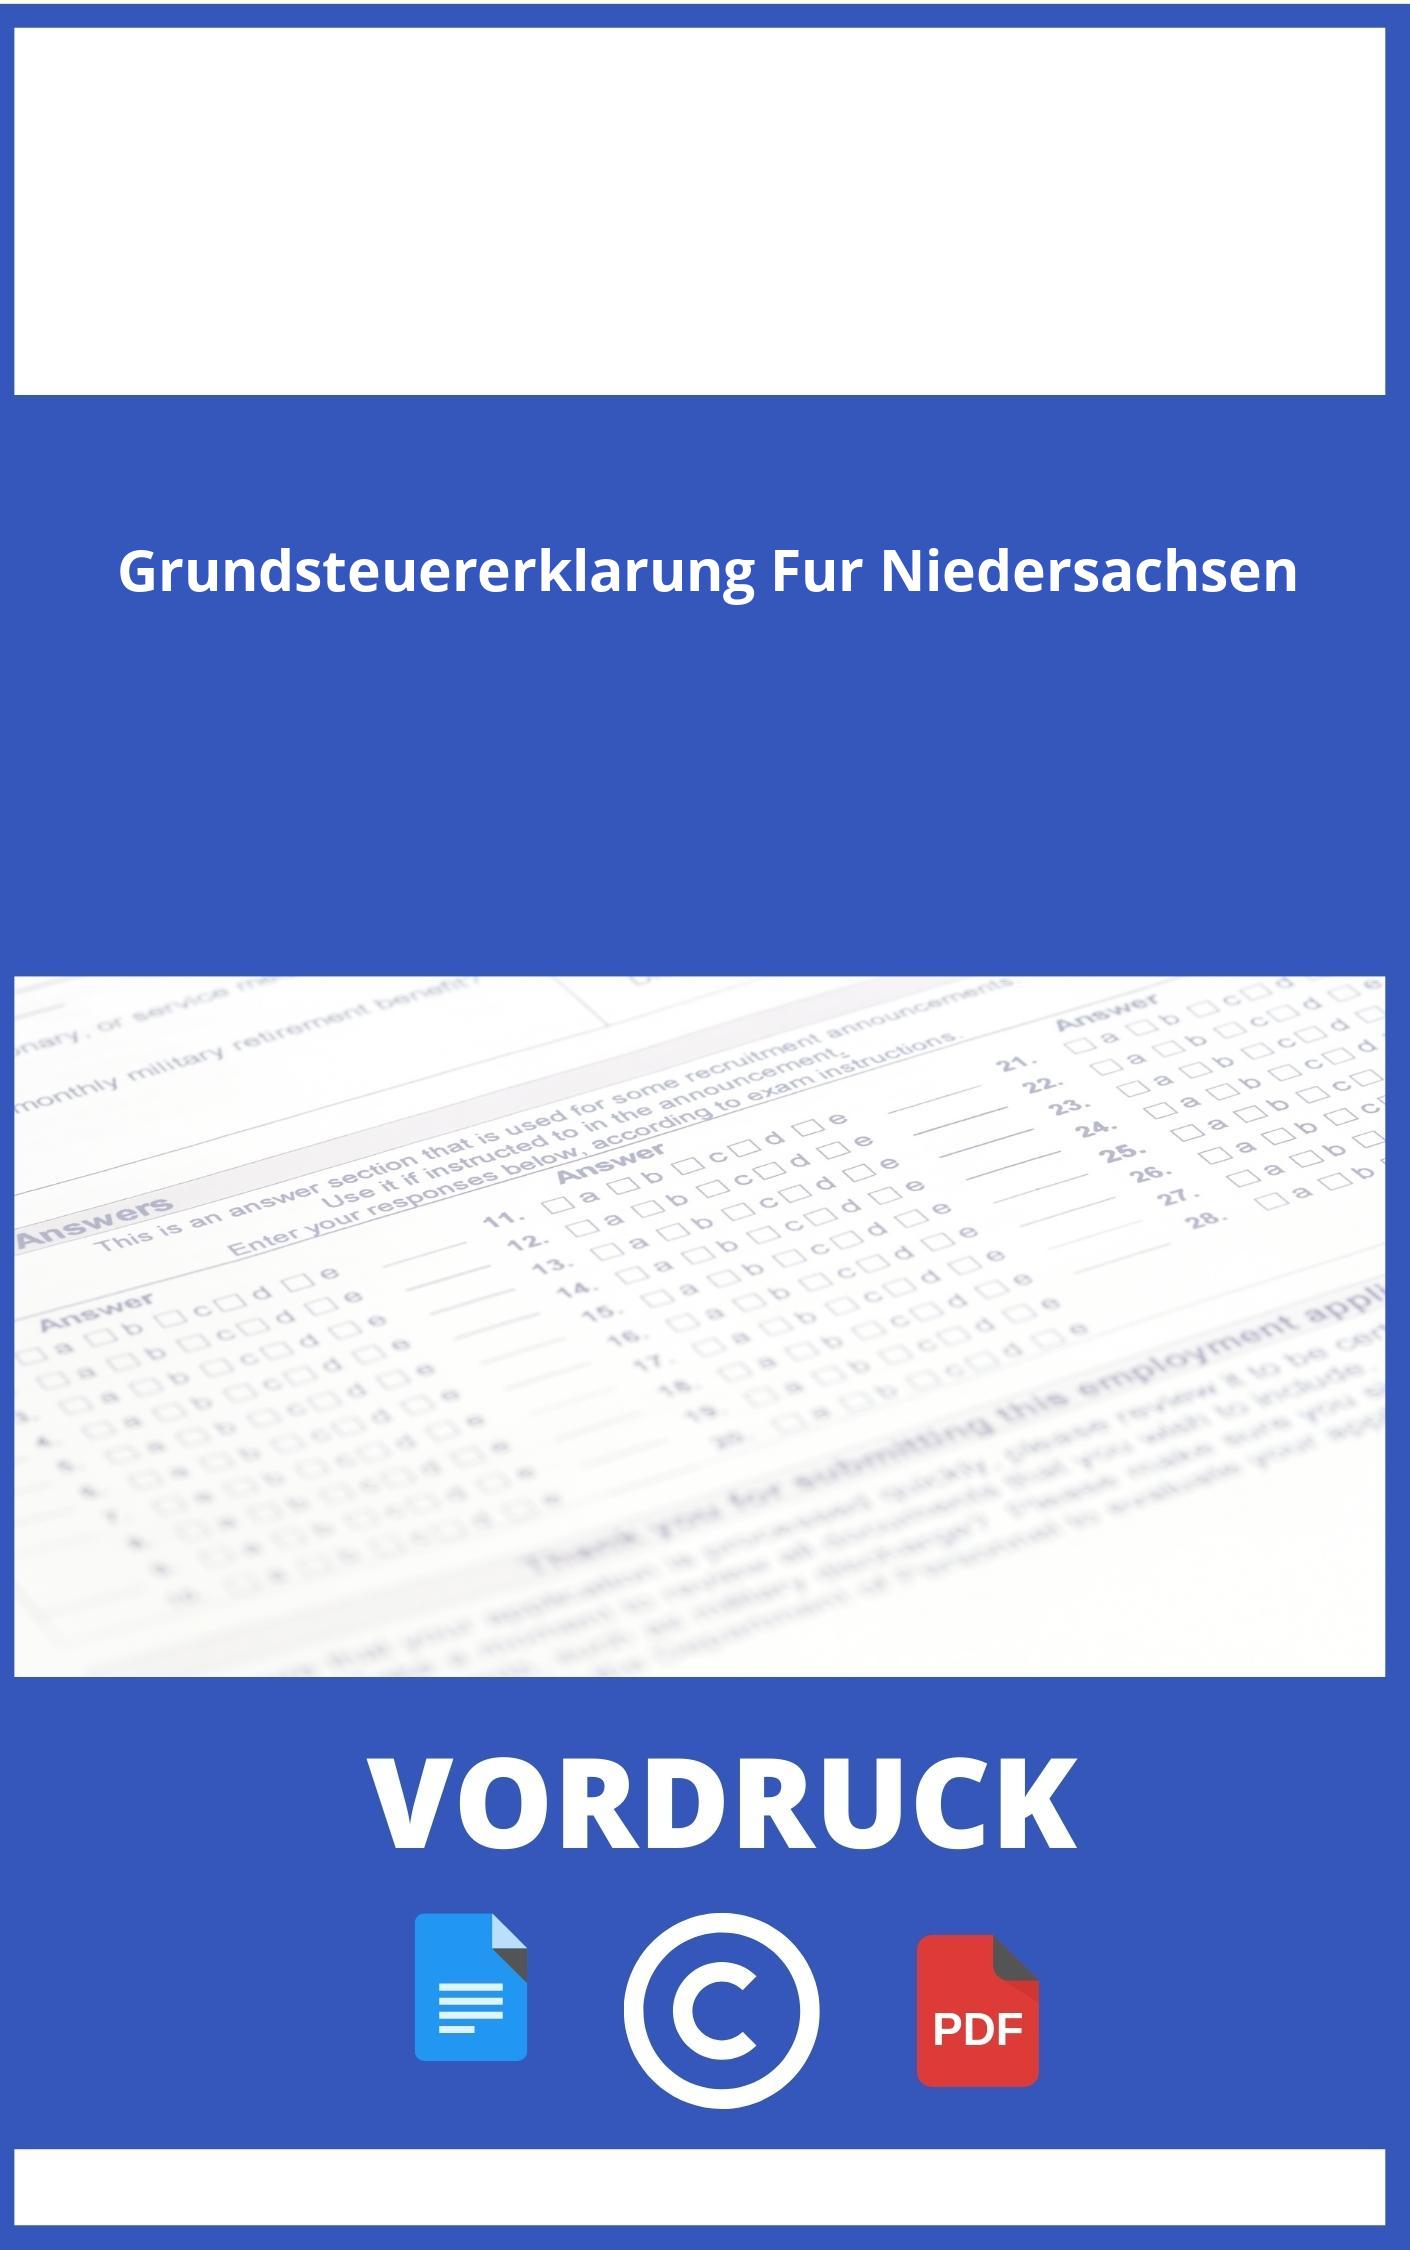 Grundsteuererklärung Vordruck Für Niedersachsen